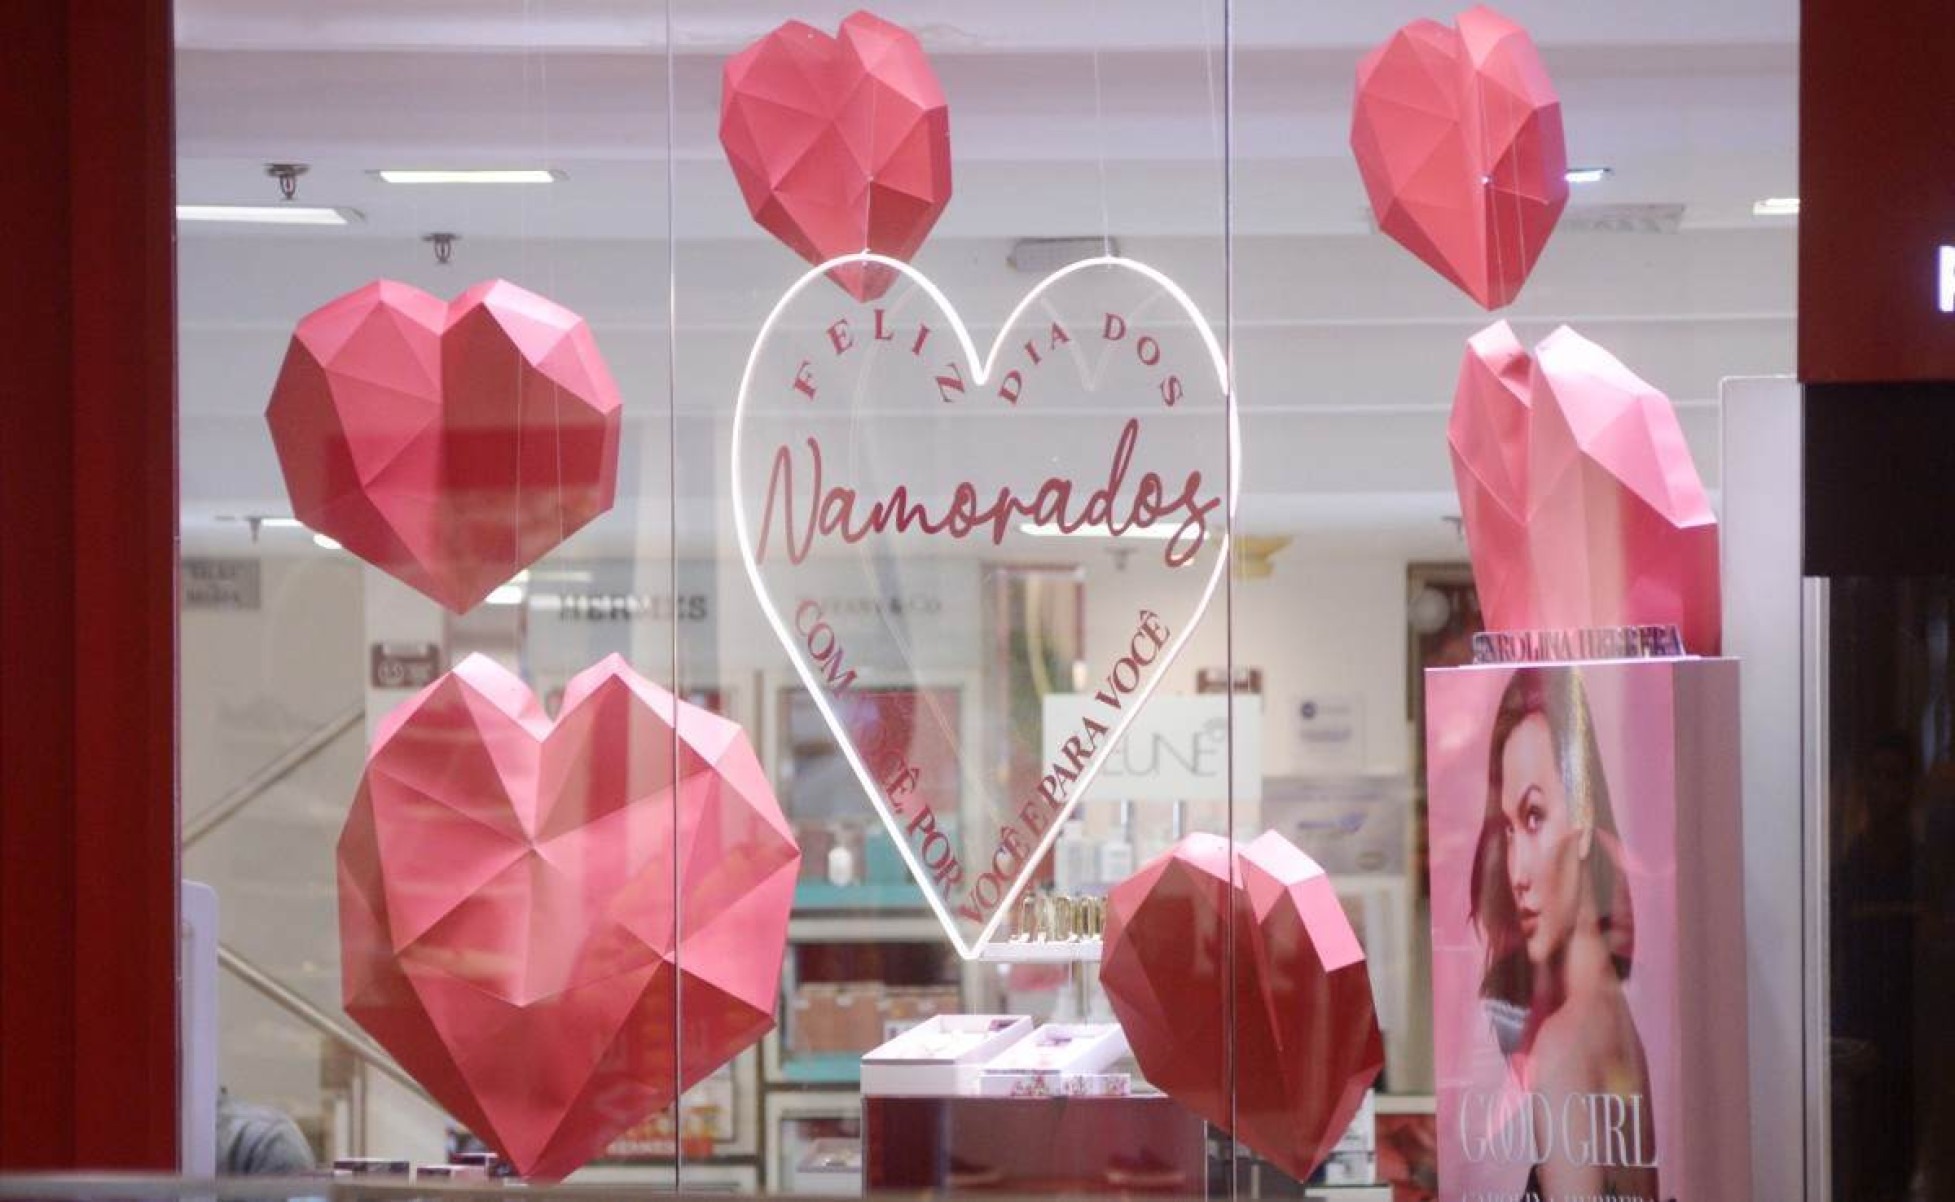 Shoppings esperam aumento de 4,2% nas vendas para o Dia dos Namorados